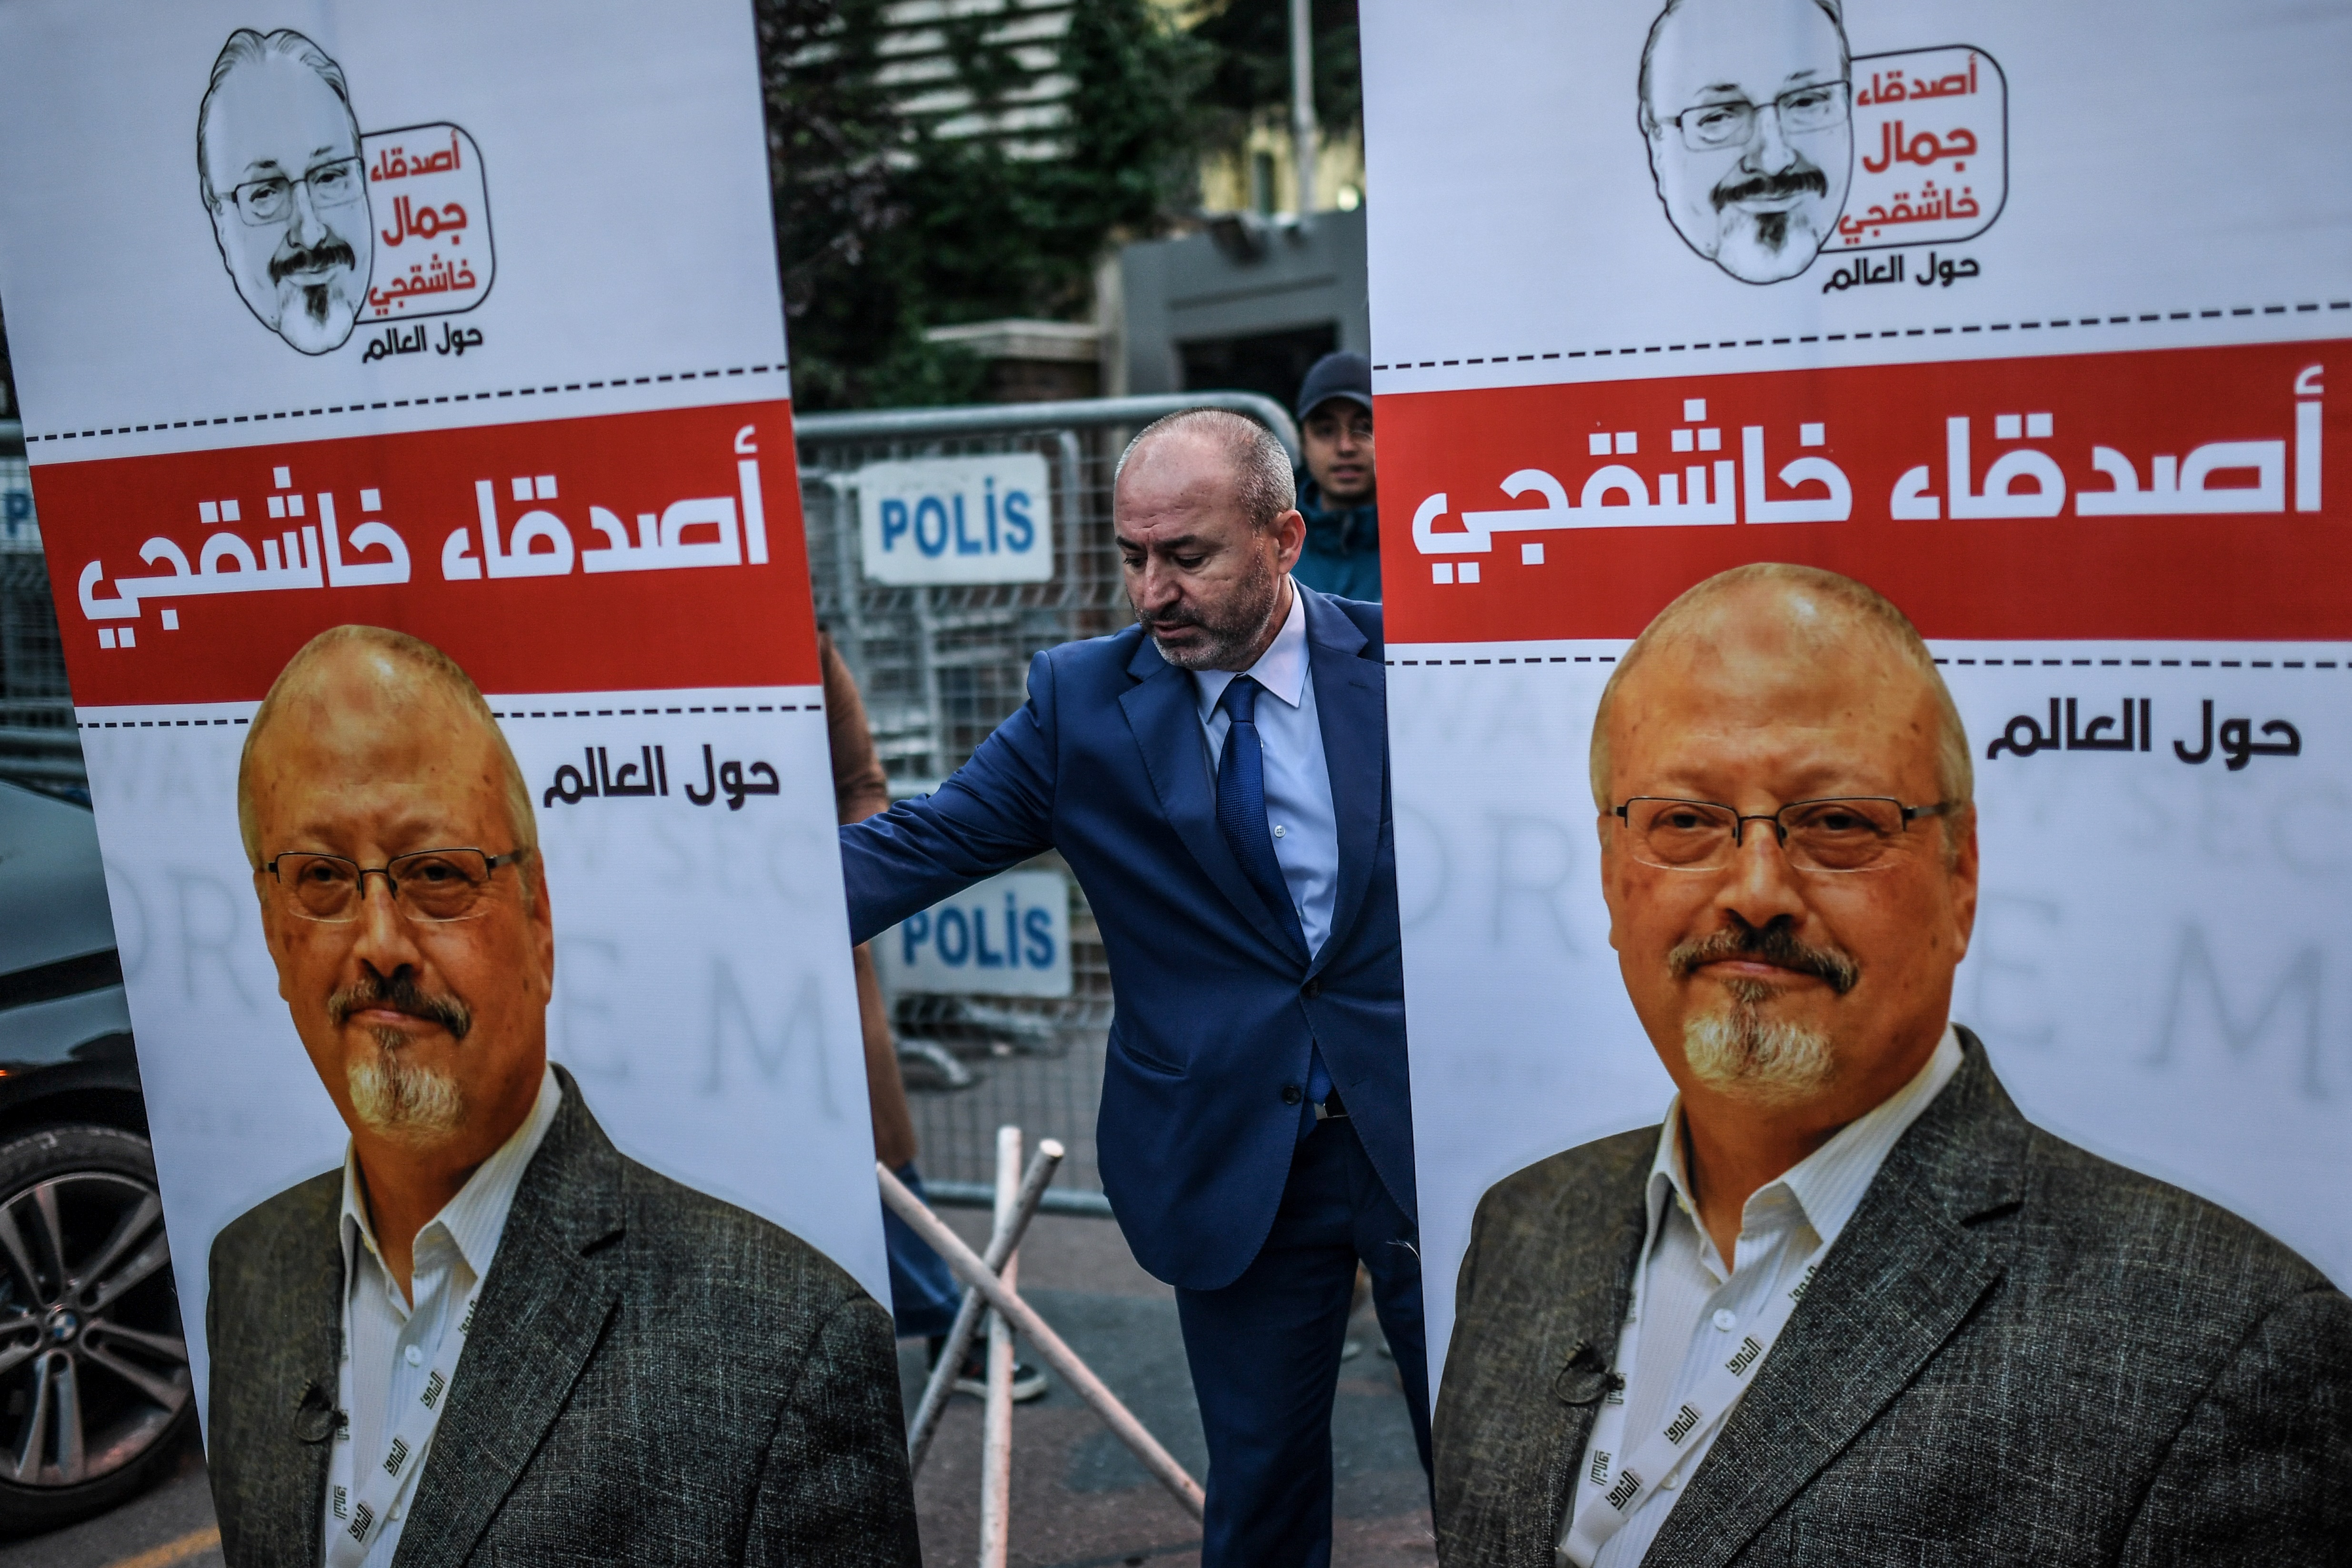 Jamal Khashoggi meggyilkolt újságíró az isztambuli szaúdi konzulátus elé kihelyezett plakátokon